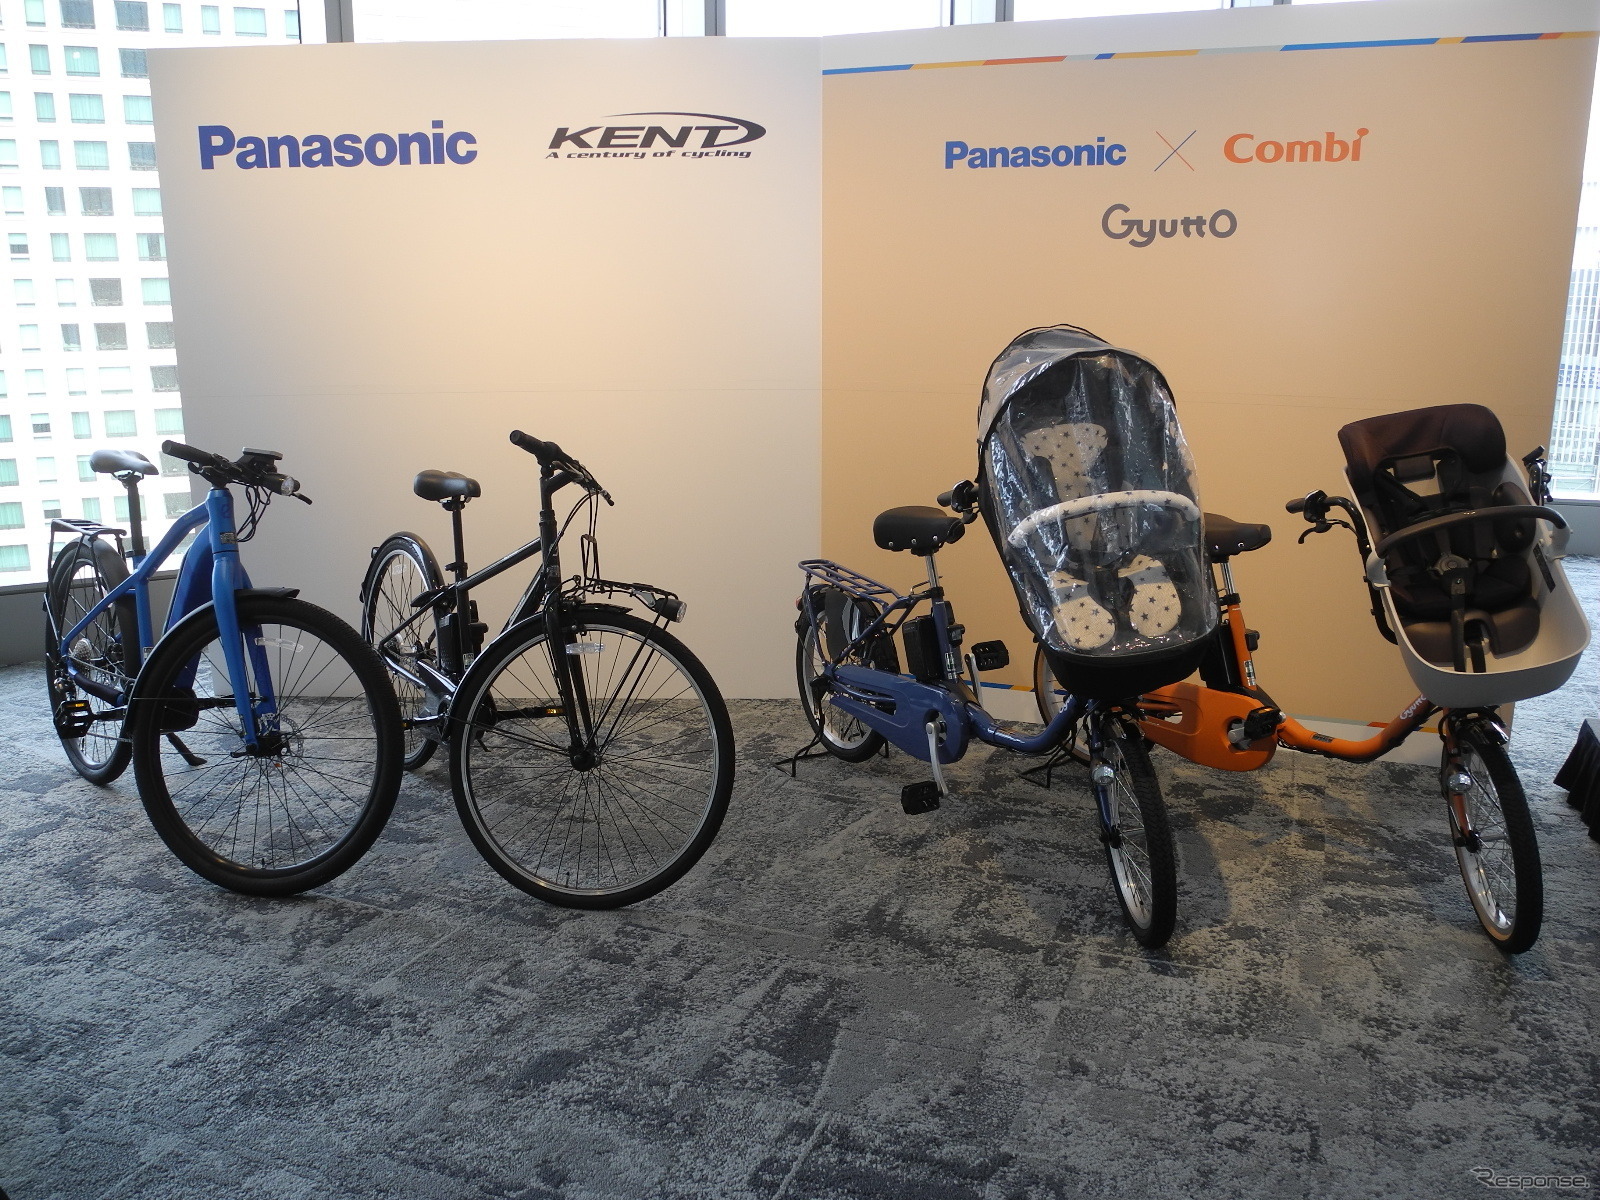 右2台がコンビと共同開発した子乗せ電動アシスト自転車、左2台がケント社に供給する予定のベース自転車